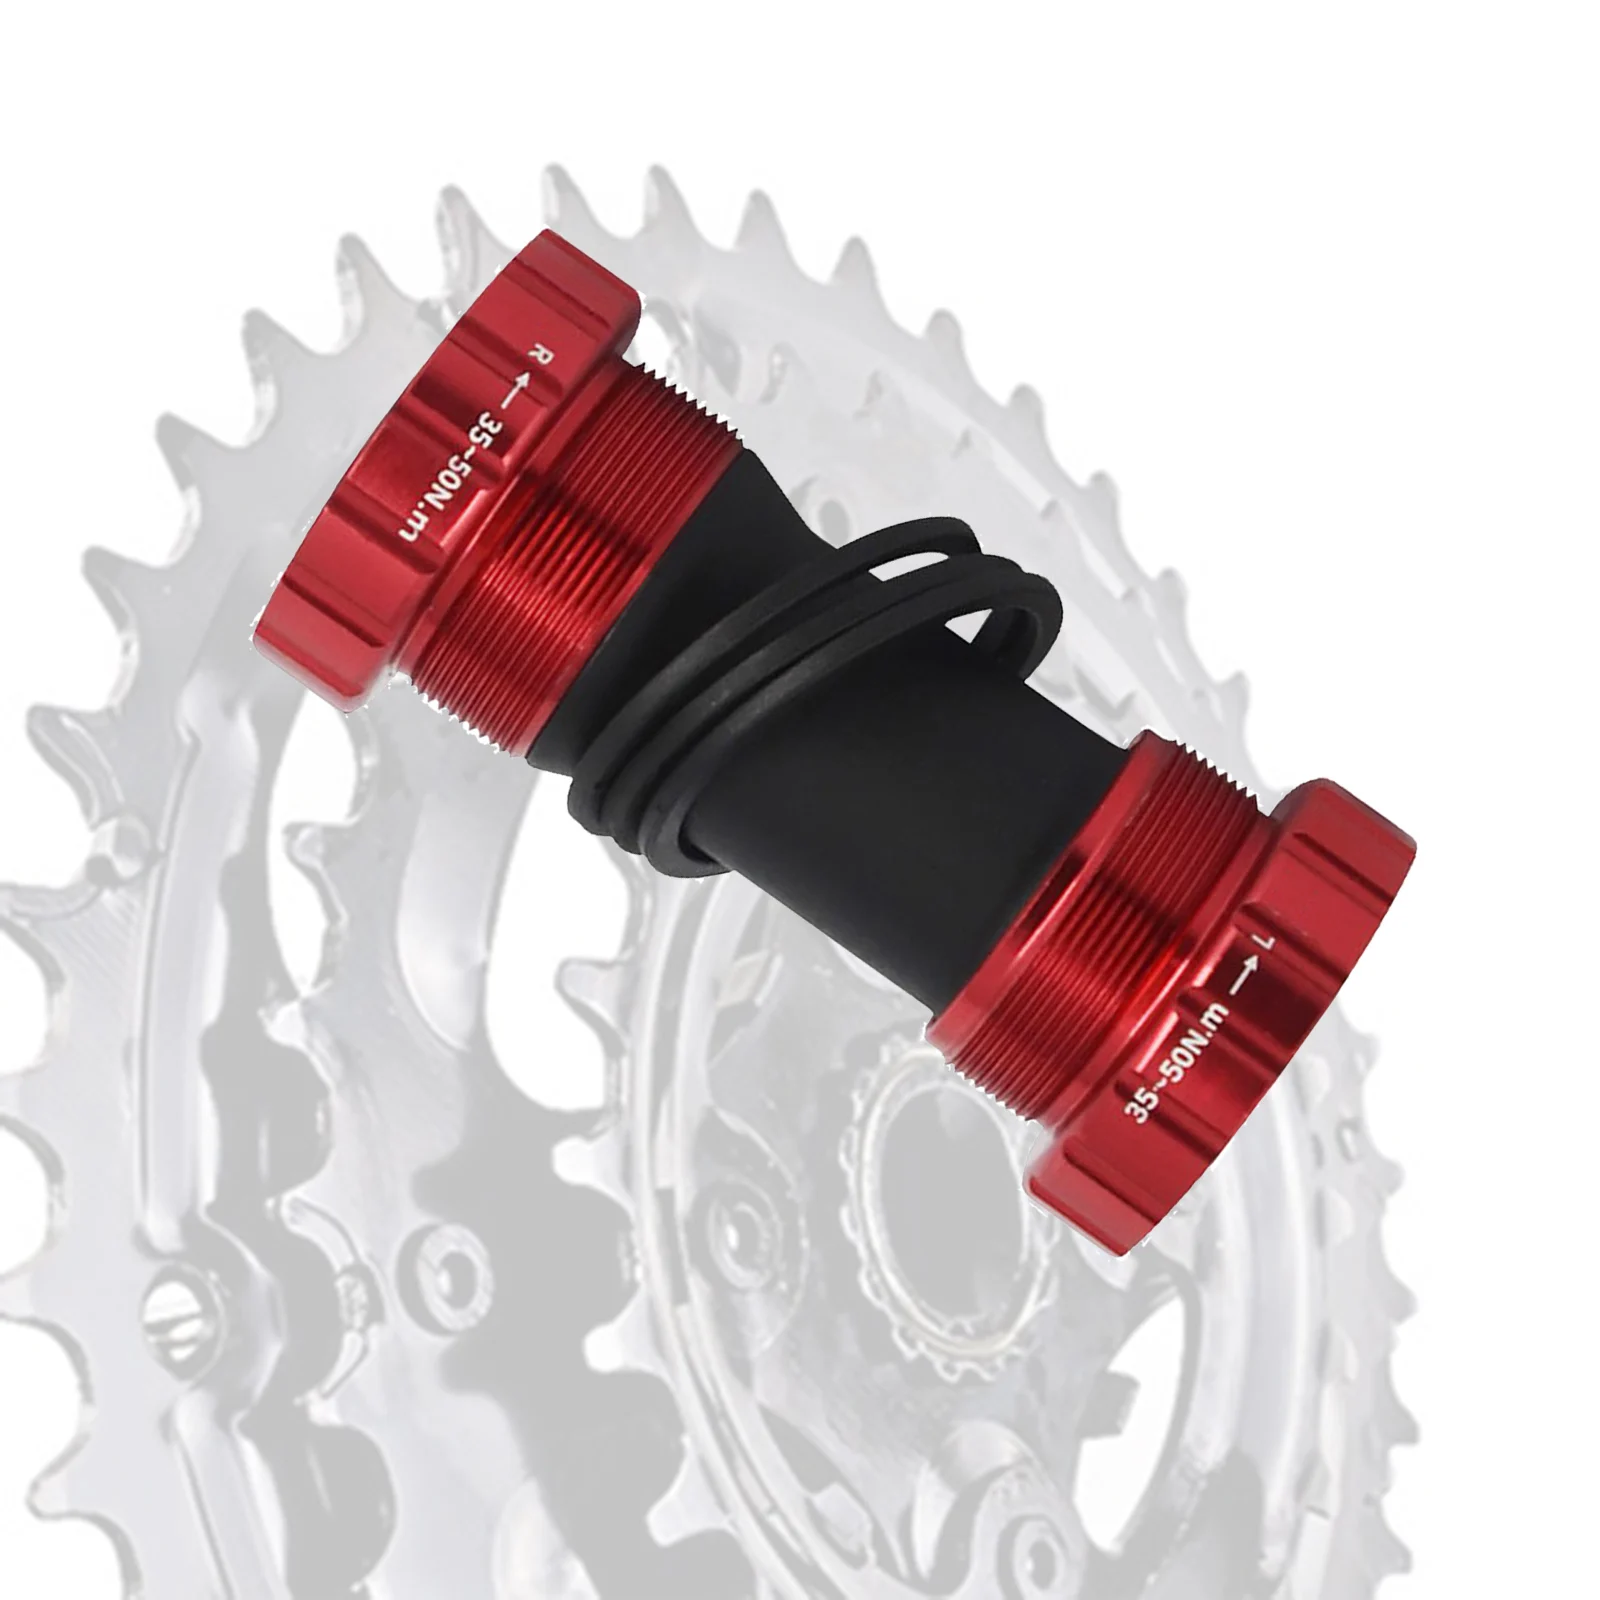 Ultralight Bike Bottom Bracket MTB Road Bike Threaded Crankset Sealed Bearings BB01 for 68-73mm Bottom Bracket Shell Component